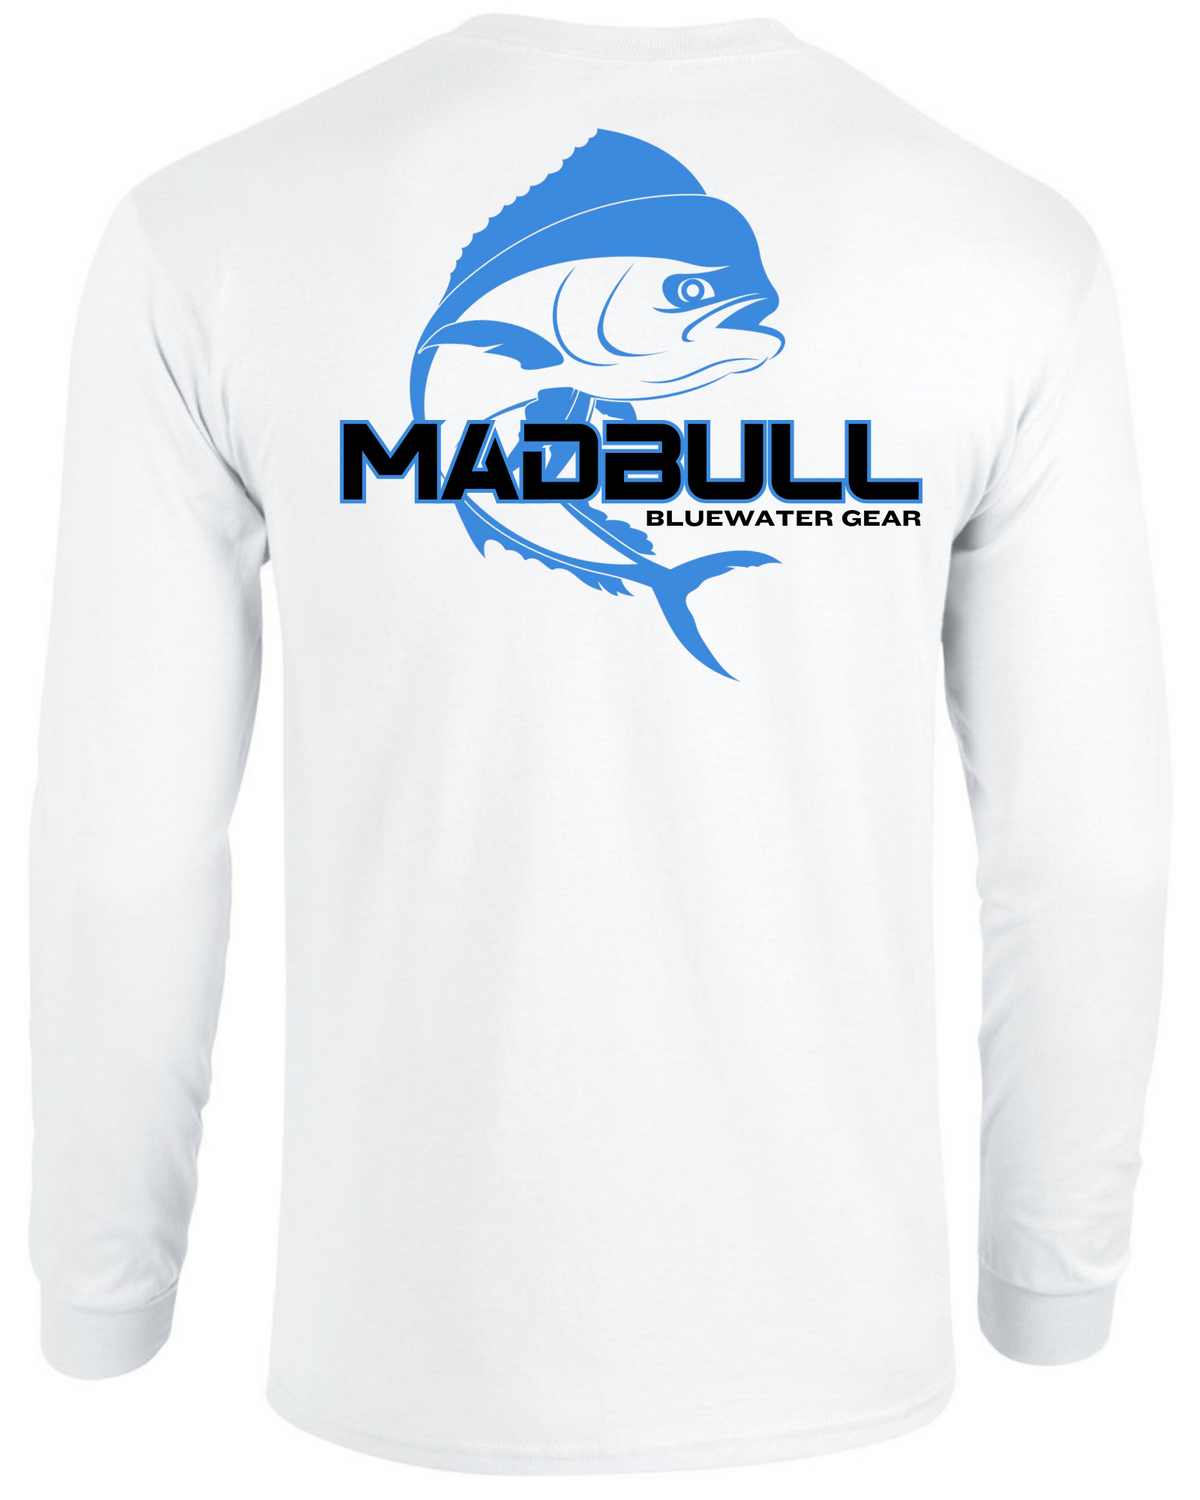 Bluewater Bull Performance Fishing Shirt – MadBull Offshore